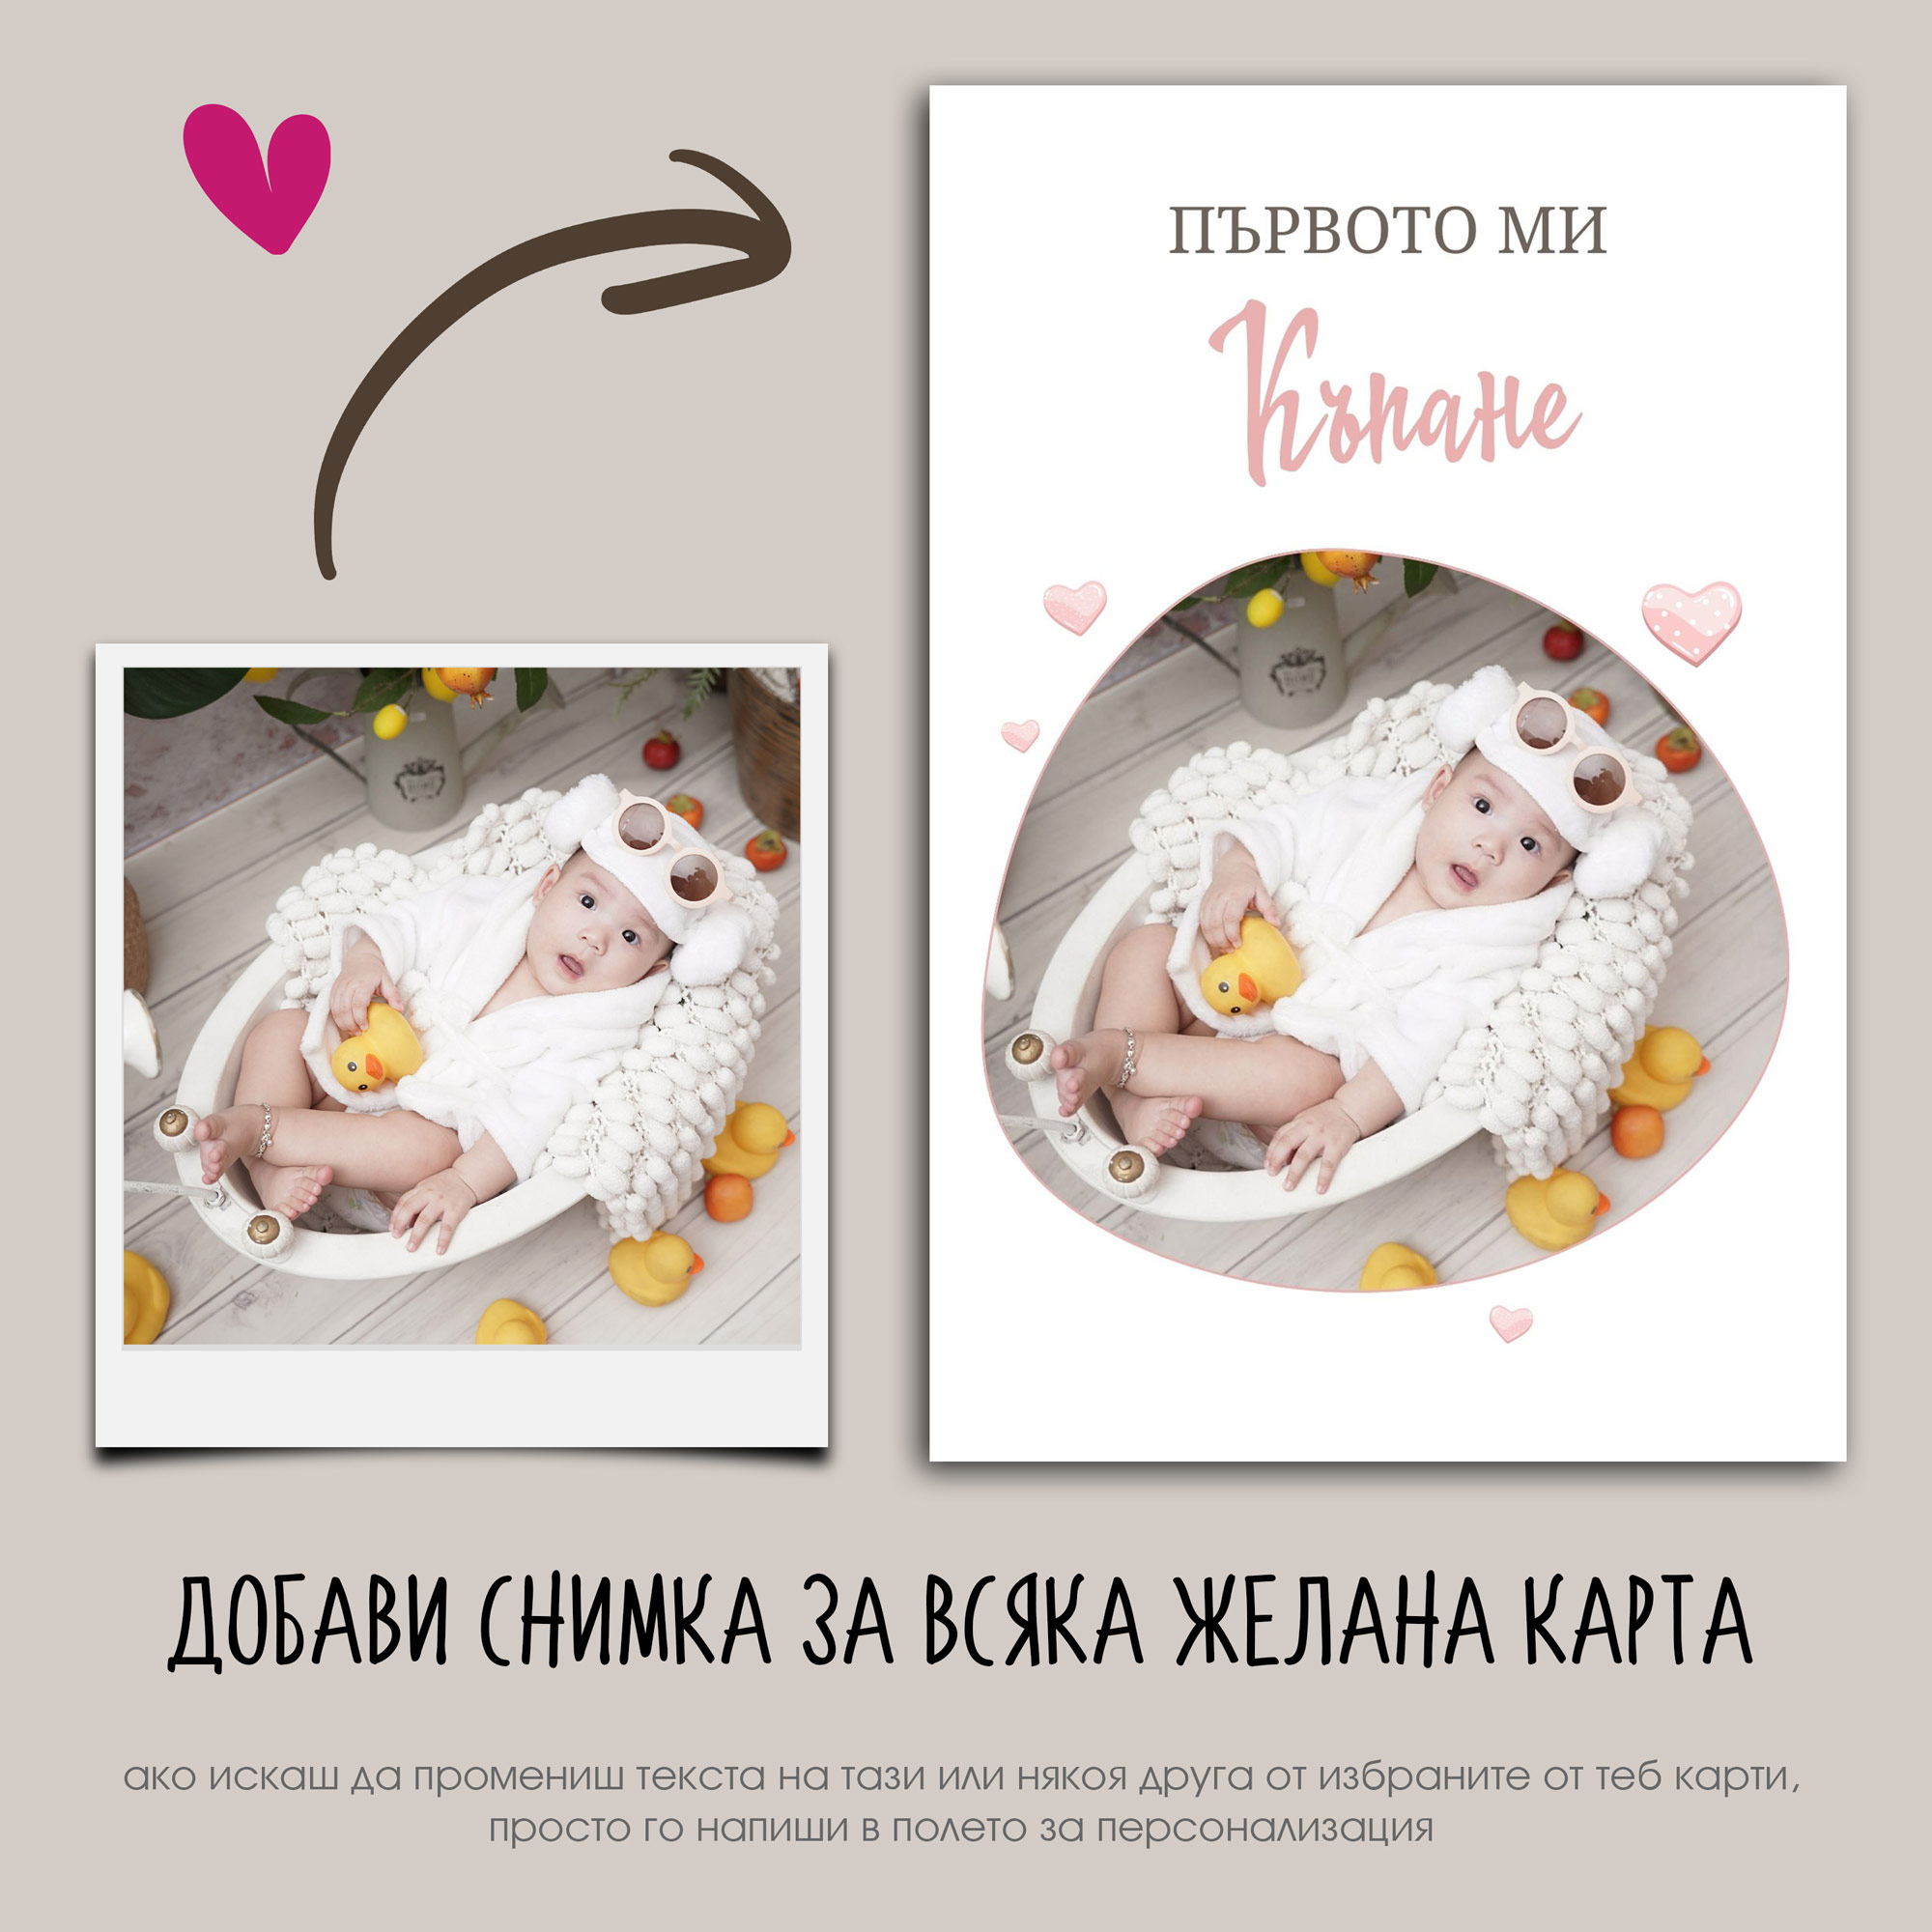 Персонализирани бебешки фотокарти с мечета – Подарък за новородено бебе – Слънчо Обичкам те Магазин – Магазина на слънчо